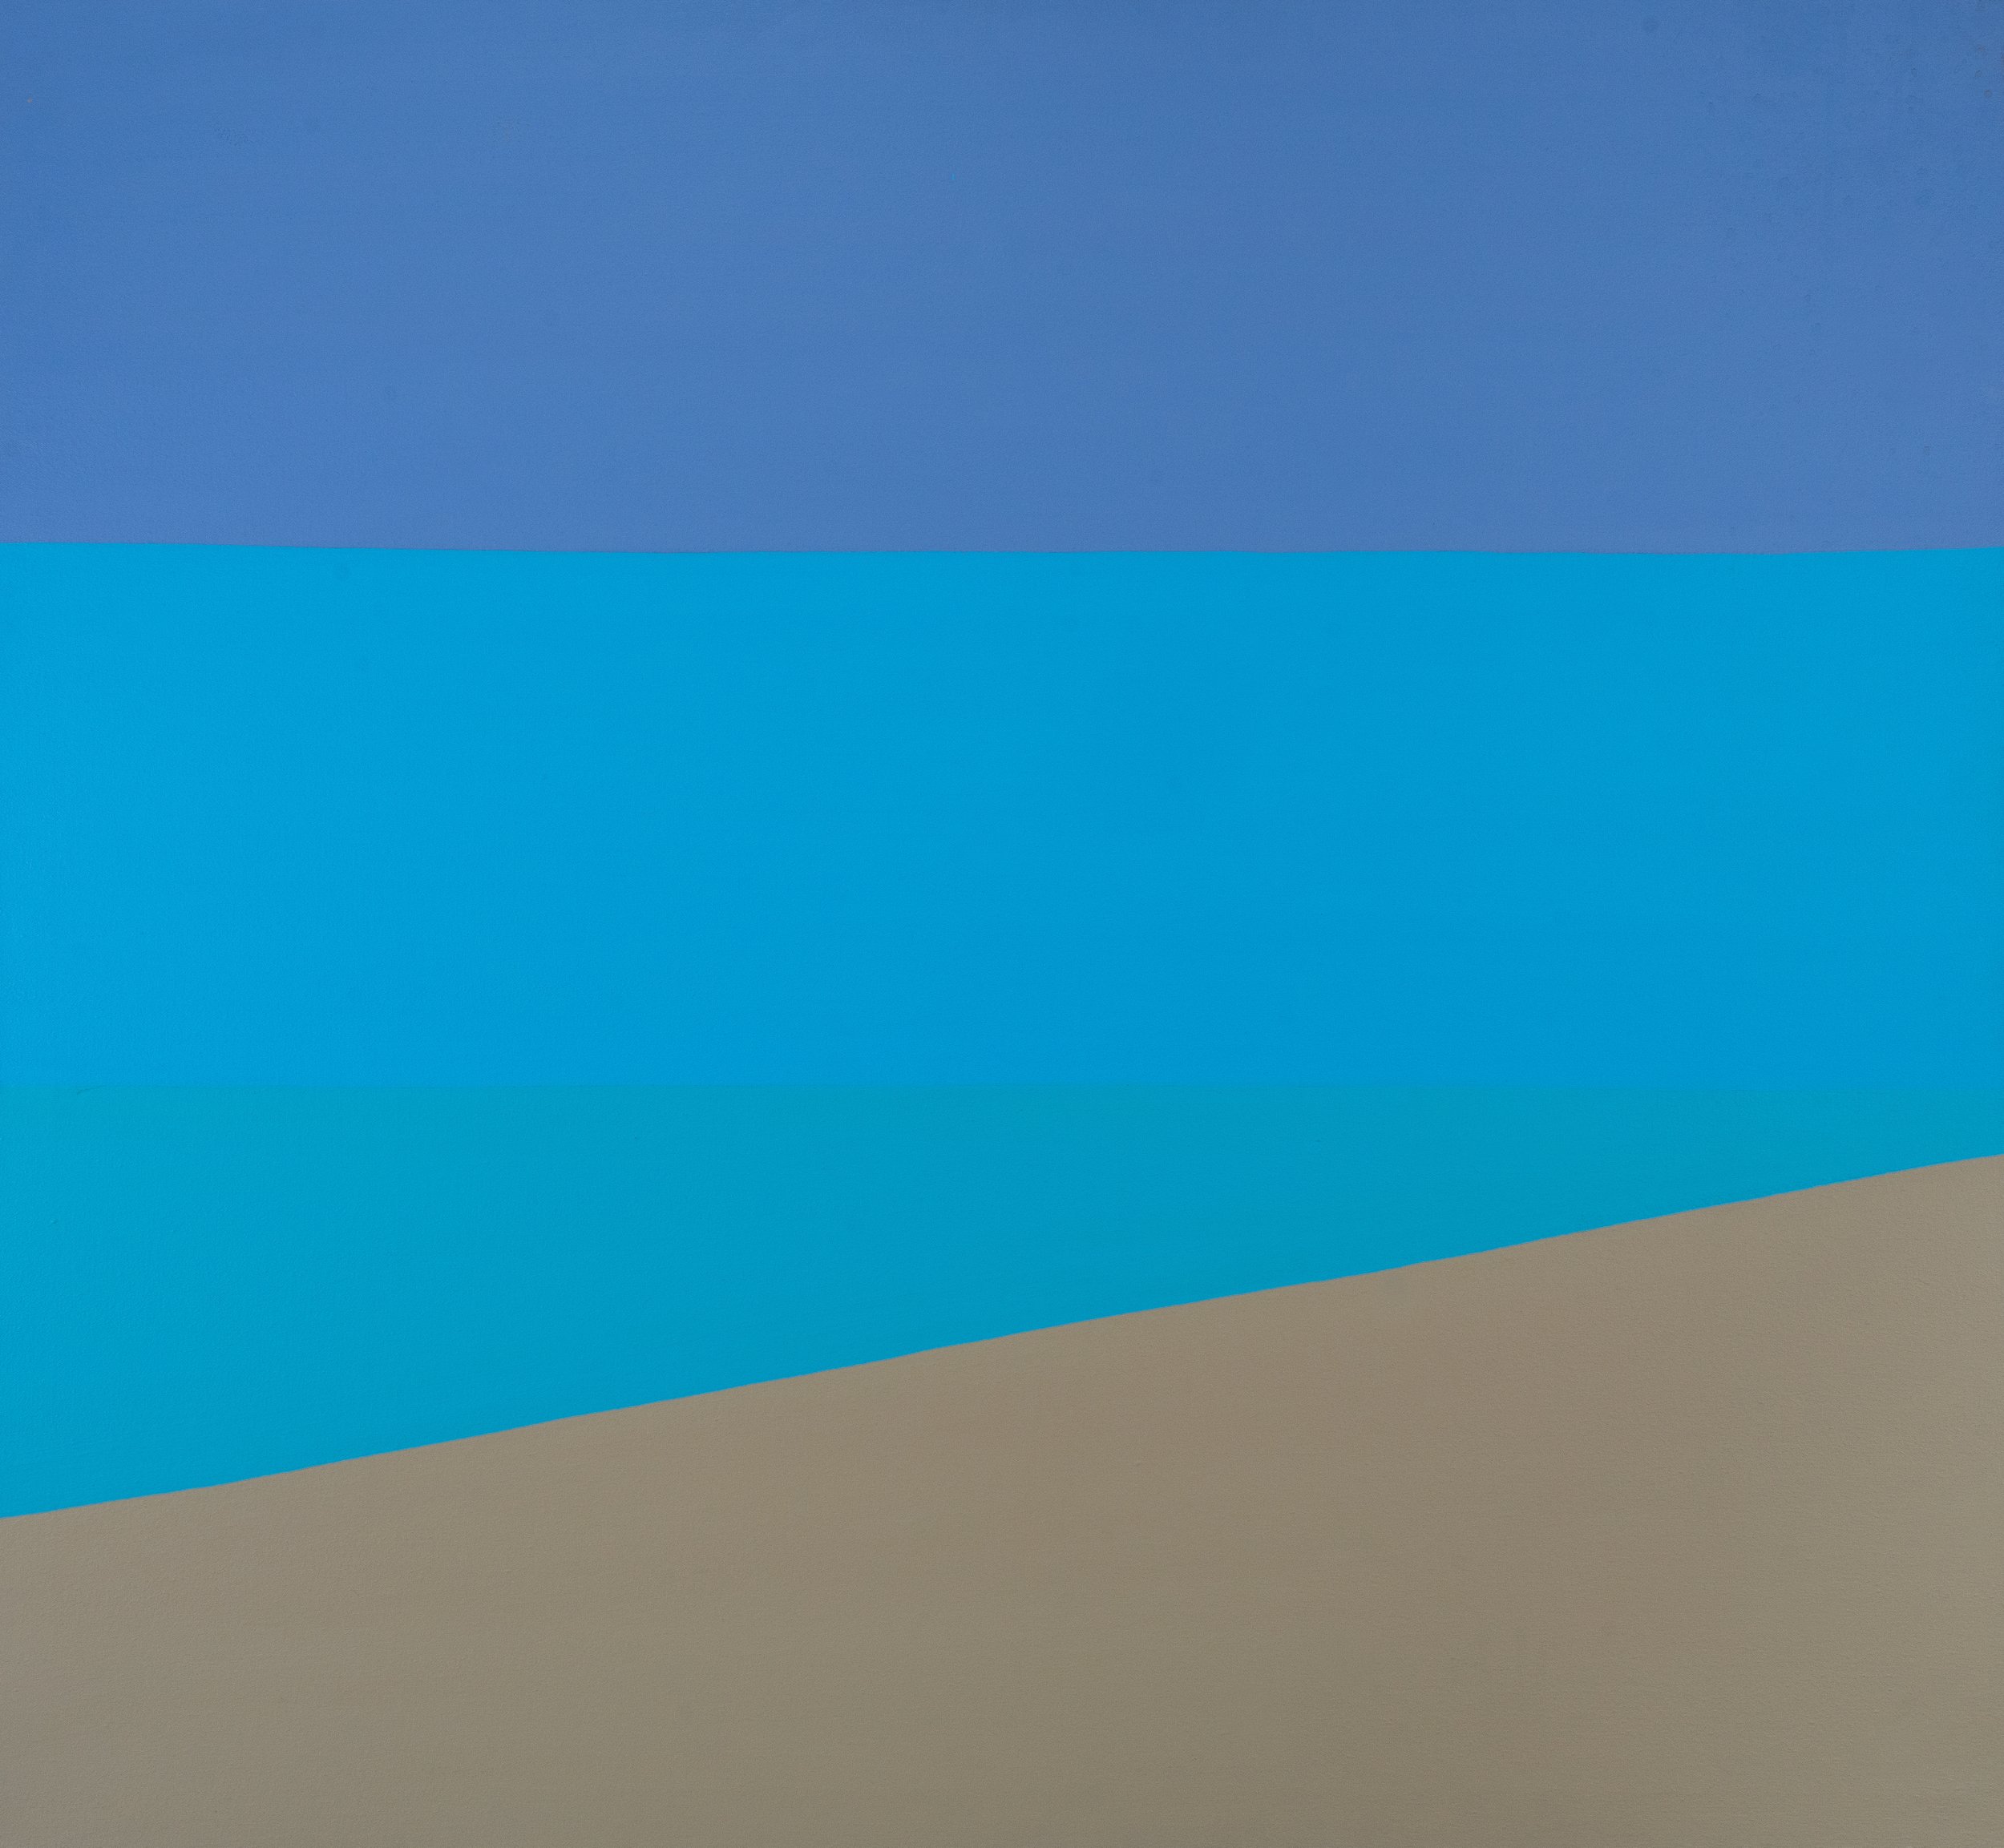 Beach (Sand, Sea and Sky), 2003, acrylic on canvas, 44x48 inches